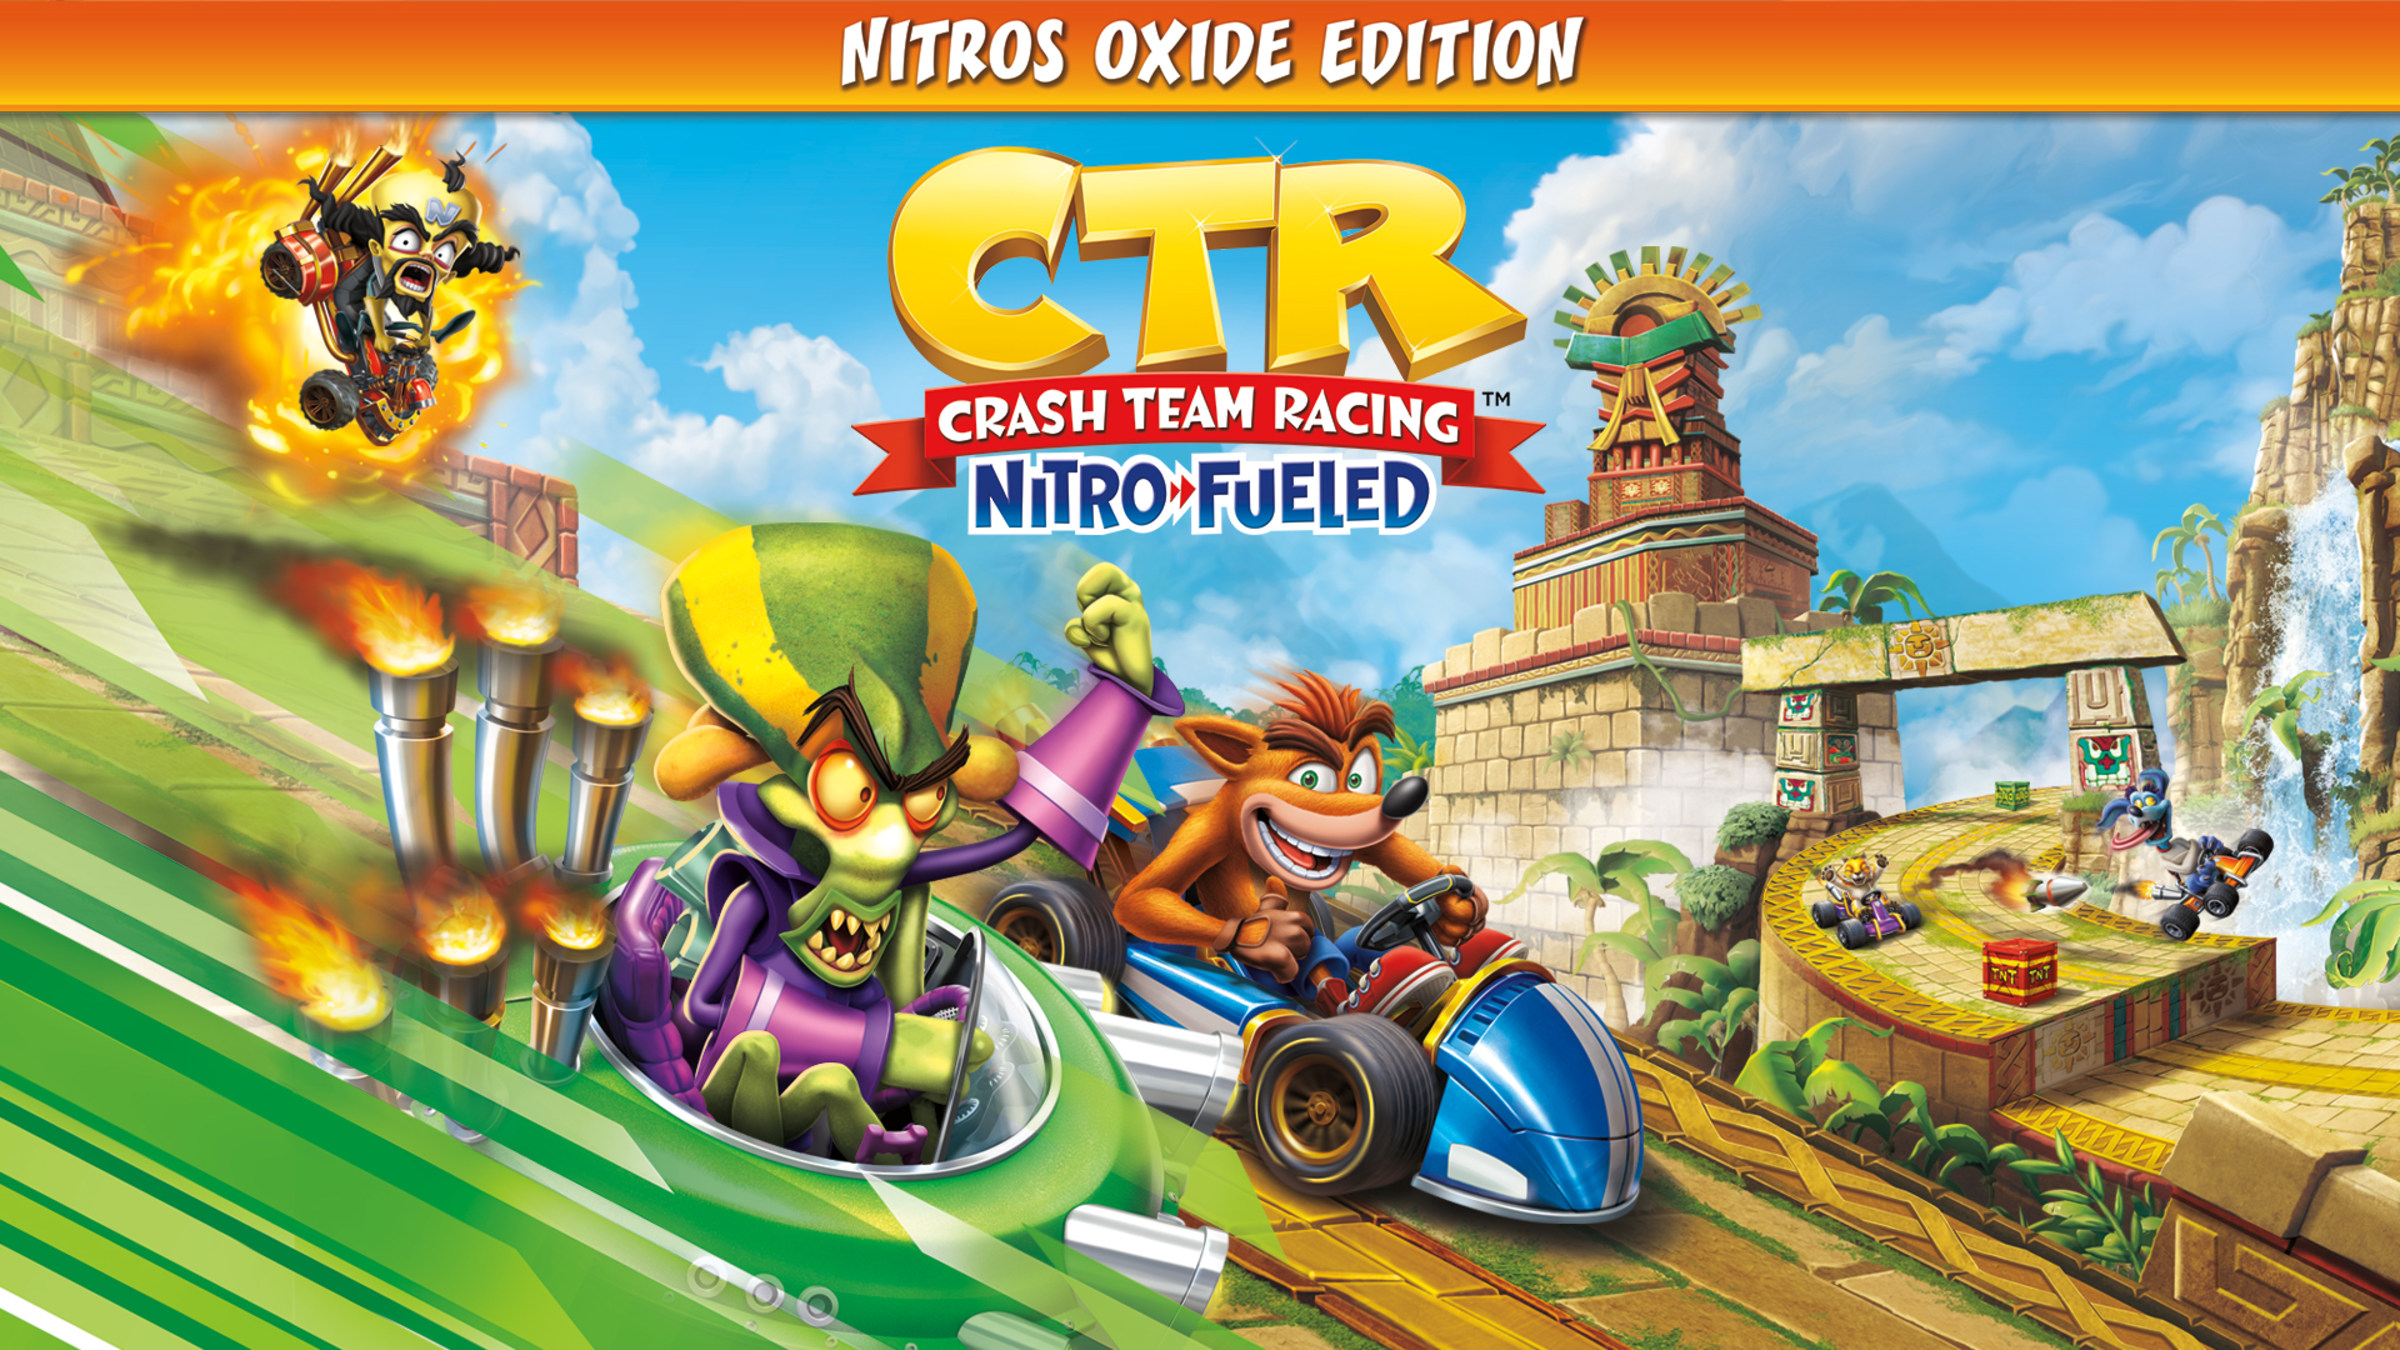 dagboek Mechanica haai Crash™ Team Racing Nitro-Fueled - Nitros Oxide Edition for Nintendo Switch  - Nintendo Official Site